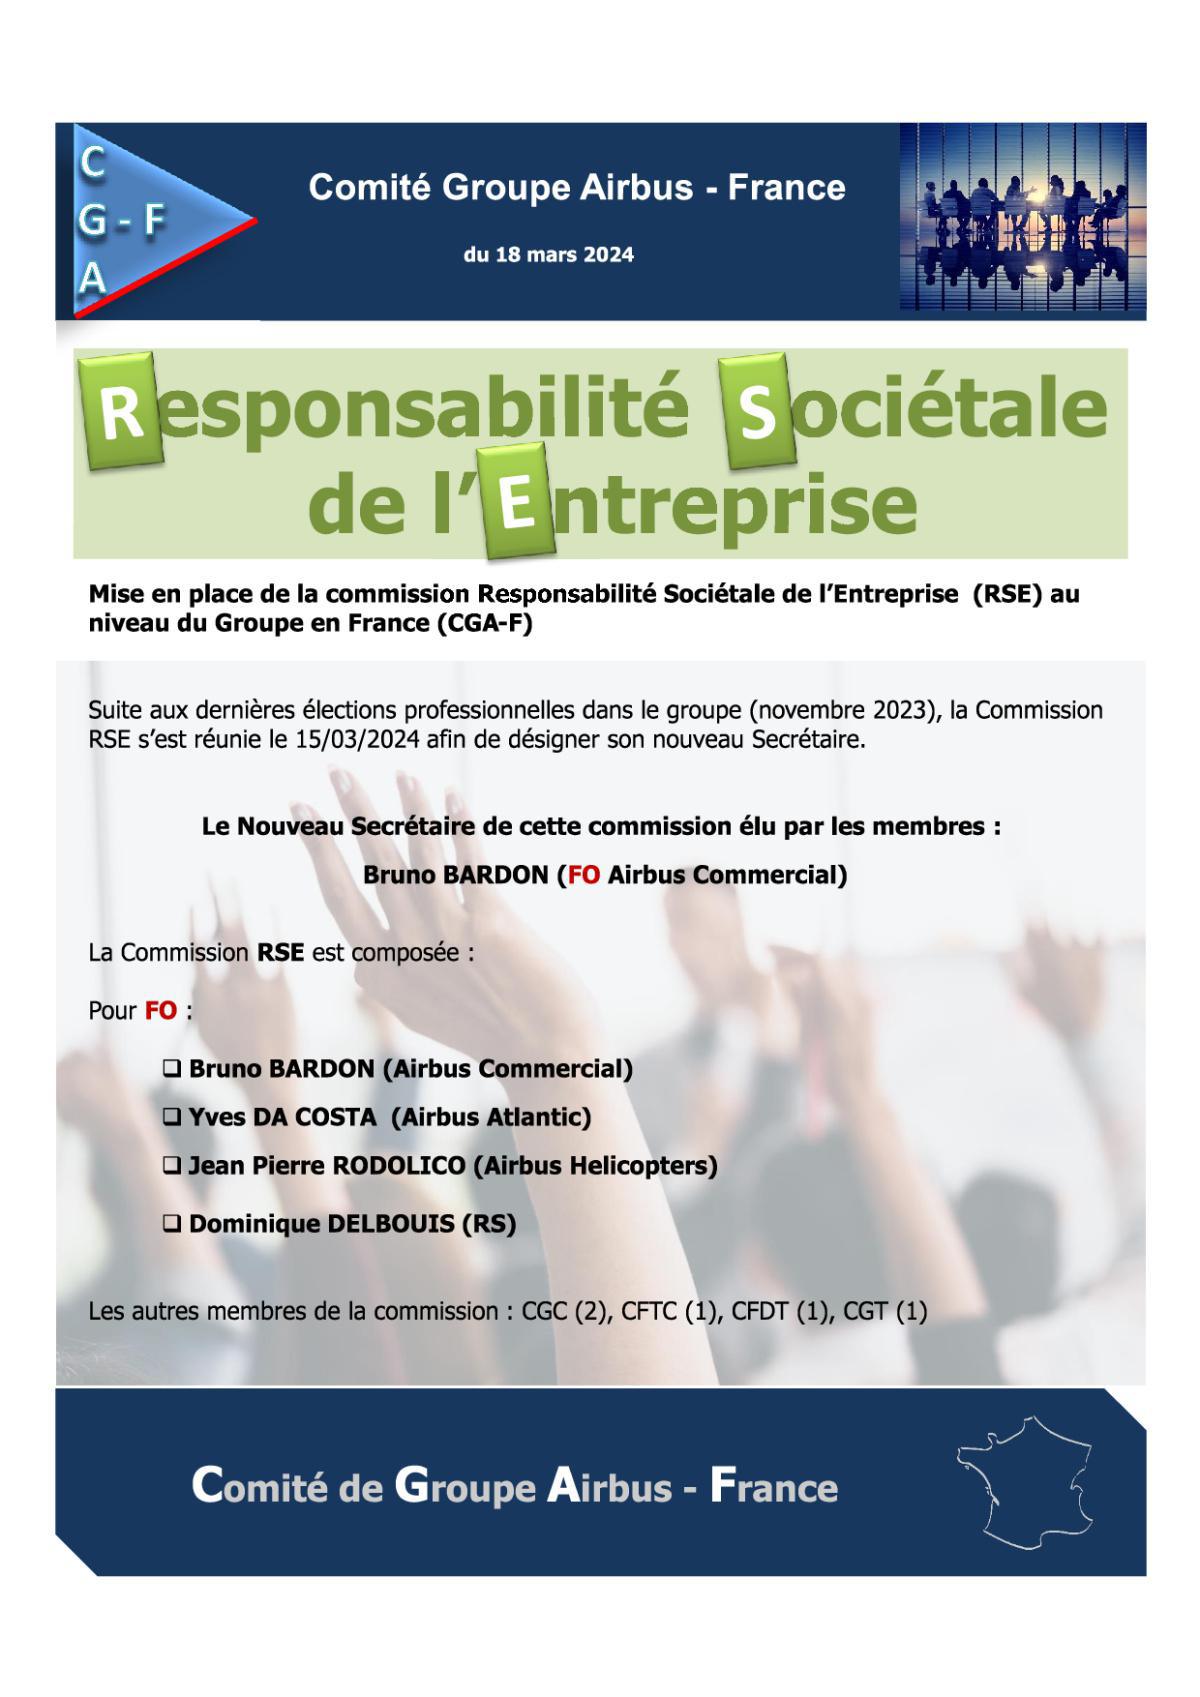 CGAF : Mise en place de la commission Responsabilité Sociétale de l’Entreprise (RSE) au niveau du Groupe en France (CGA-F)